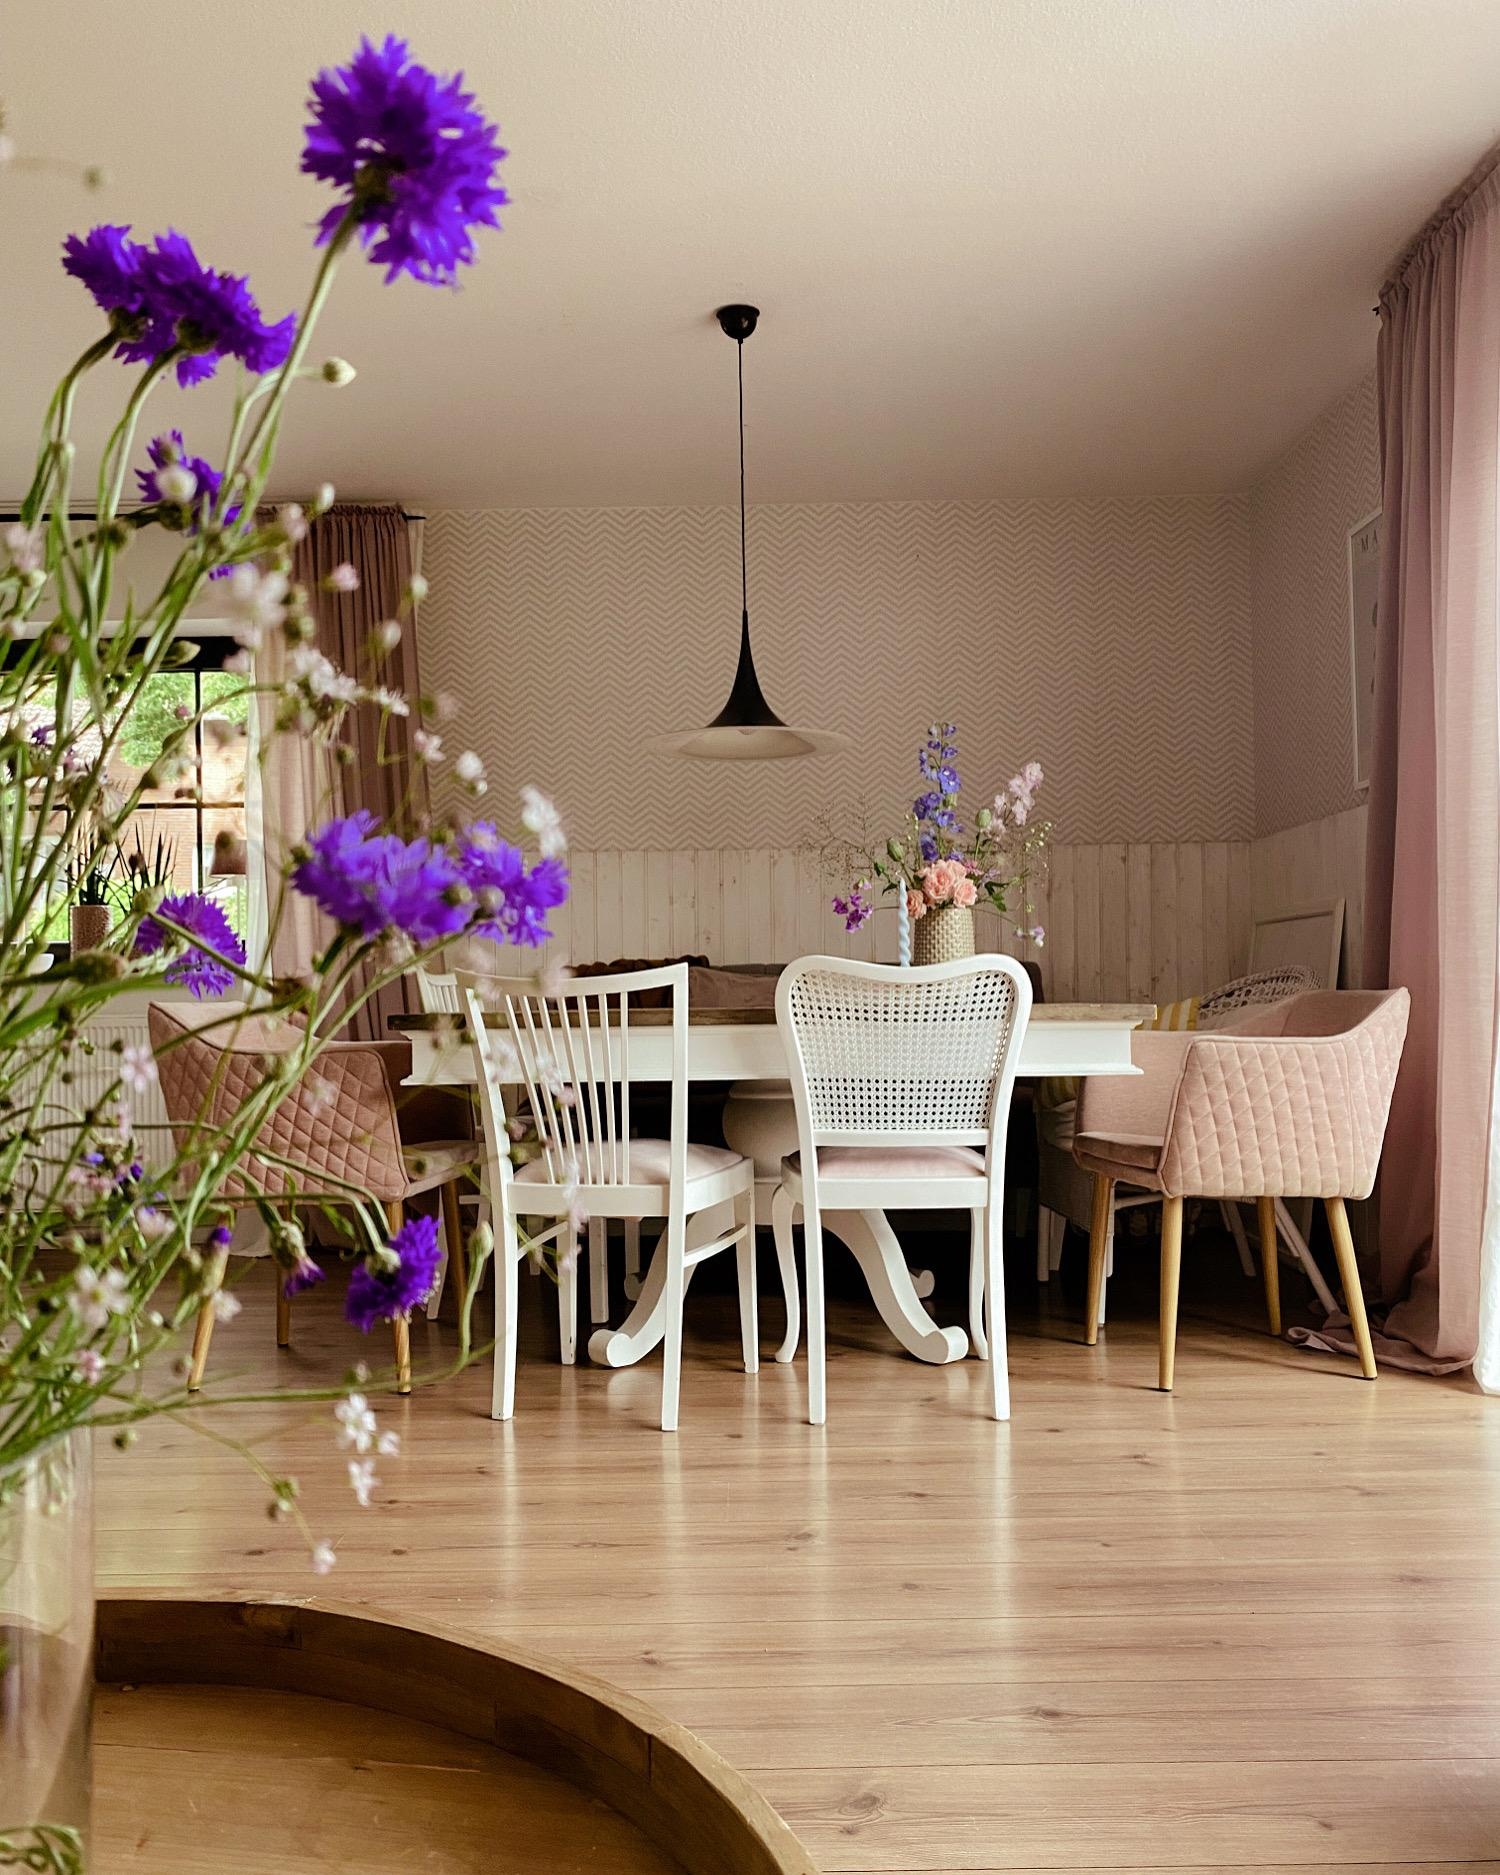 Esszimmerblick 
#diningroom#tabledecor#hyggehome#esstisch#chairmix#kornblumen